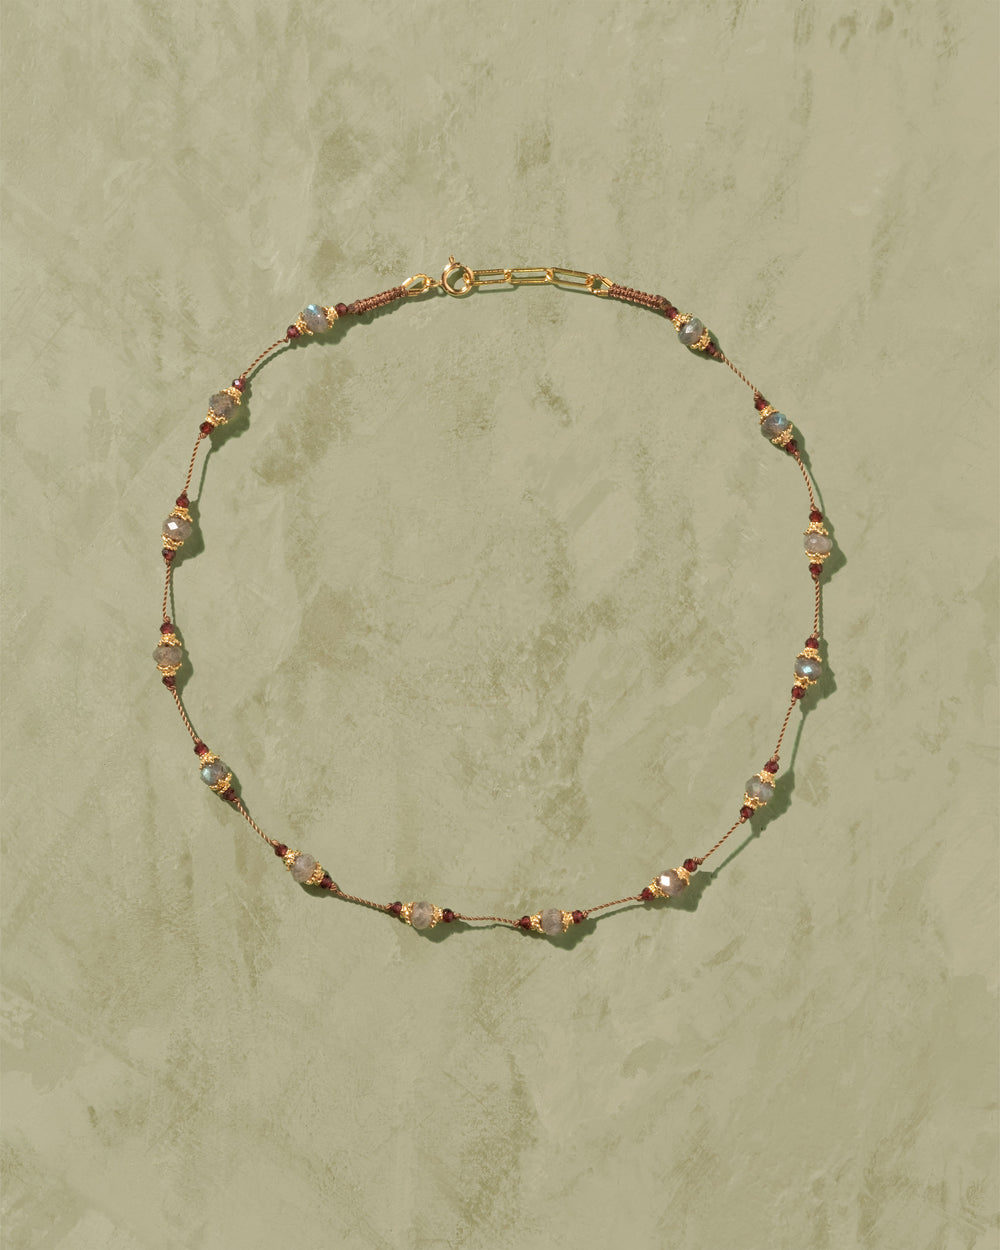 Sriphala necklace